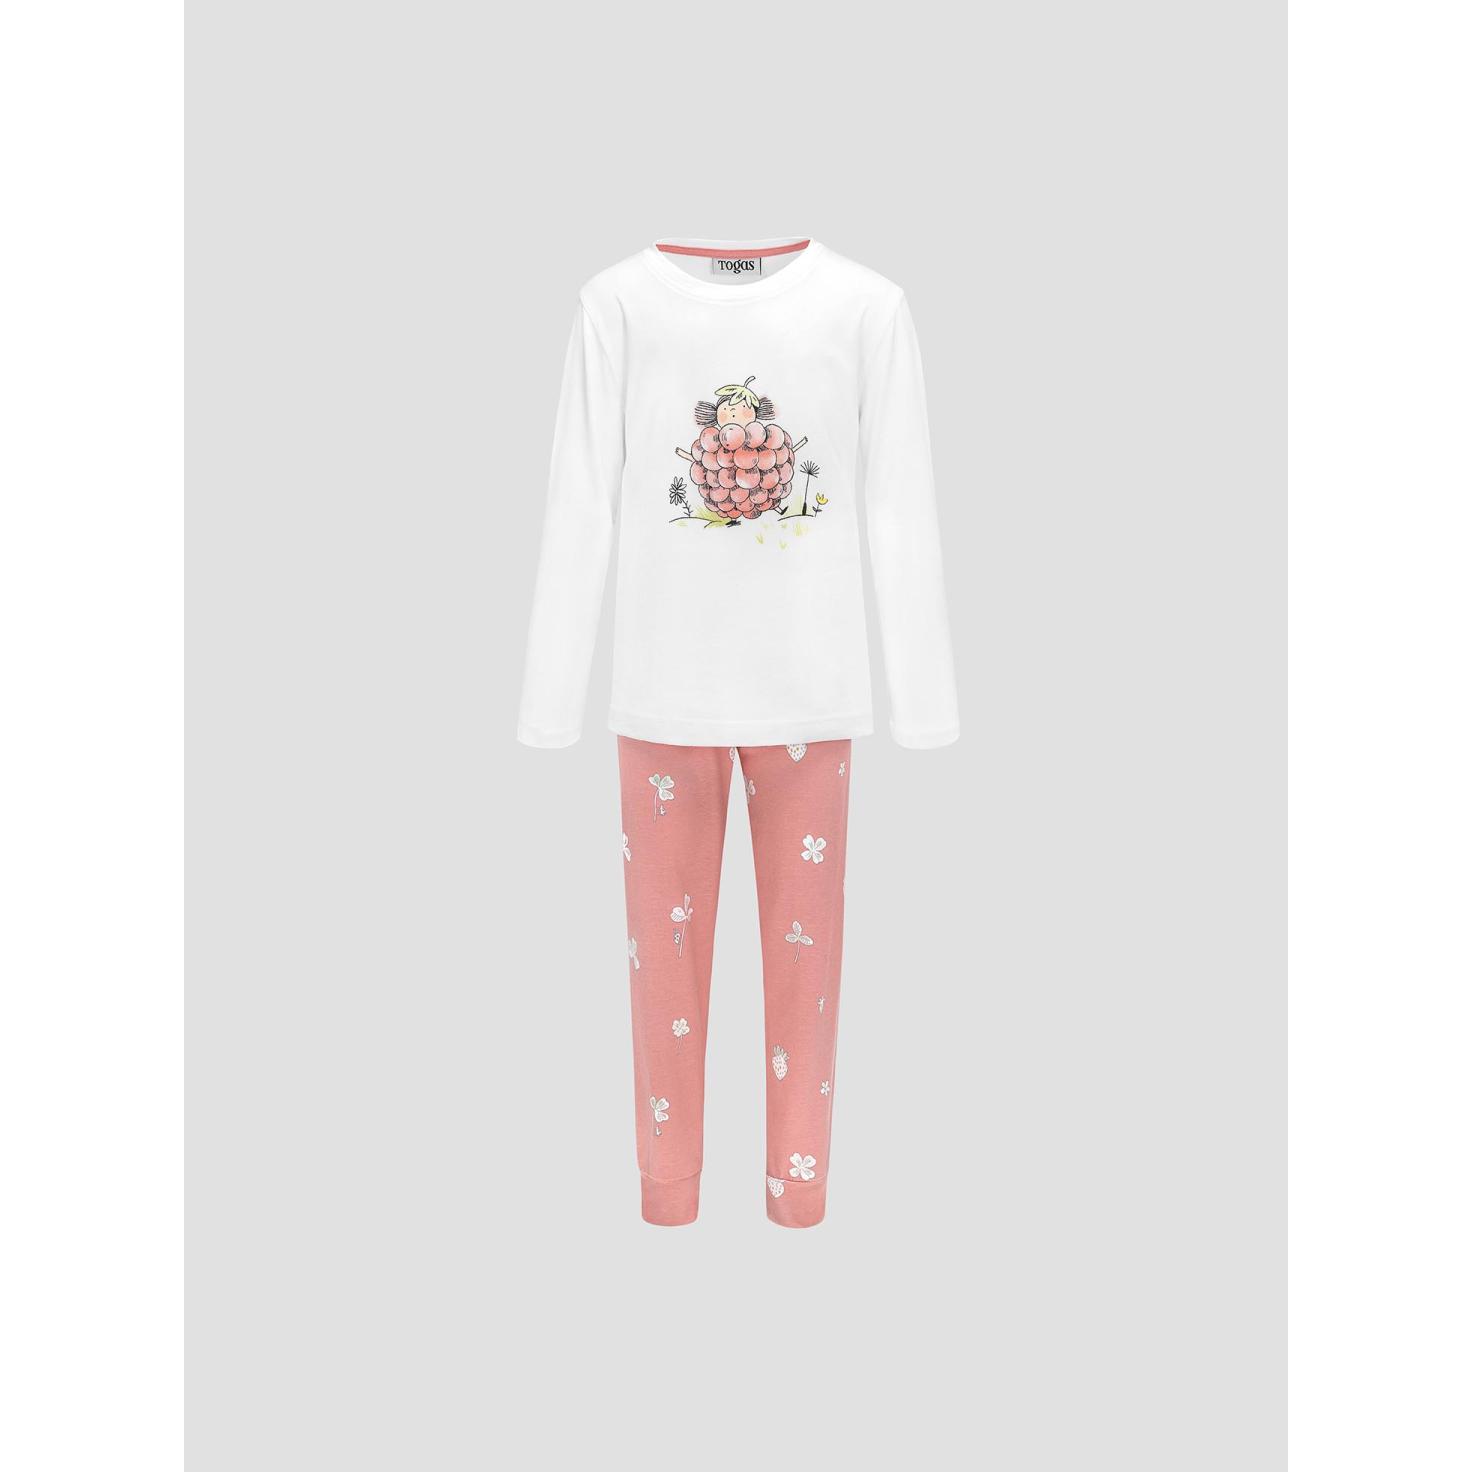 Пижама для девочек Kids by togas Стробби бело-розовый 104-110 см жен пижама с шортами инь янь белый р 46